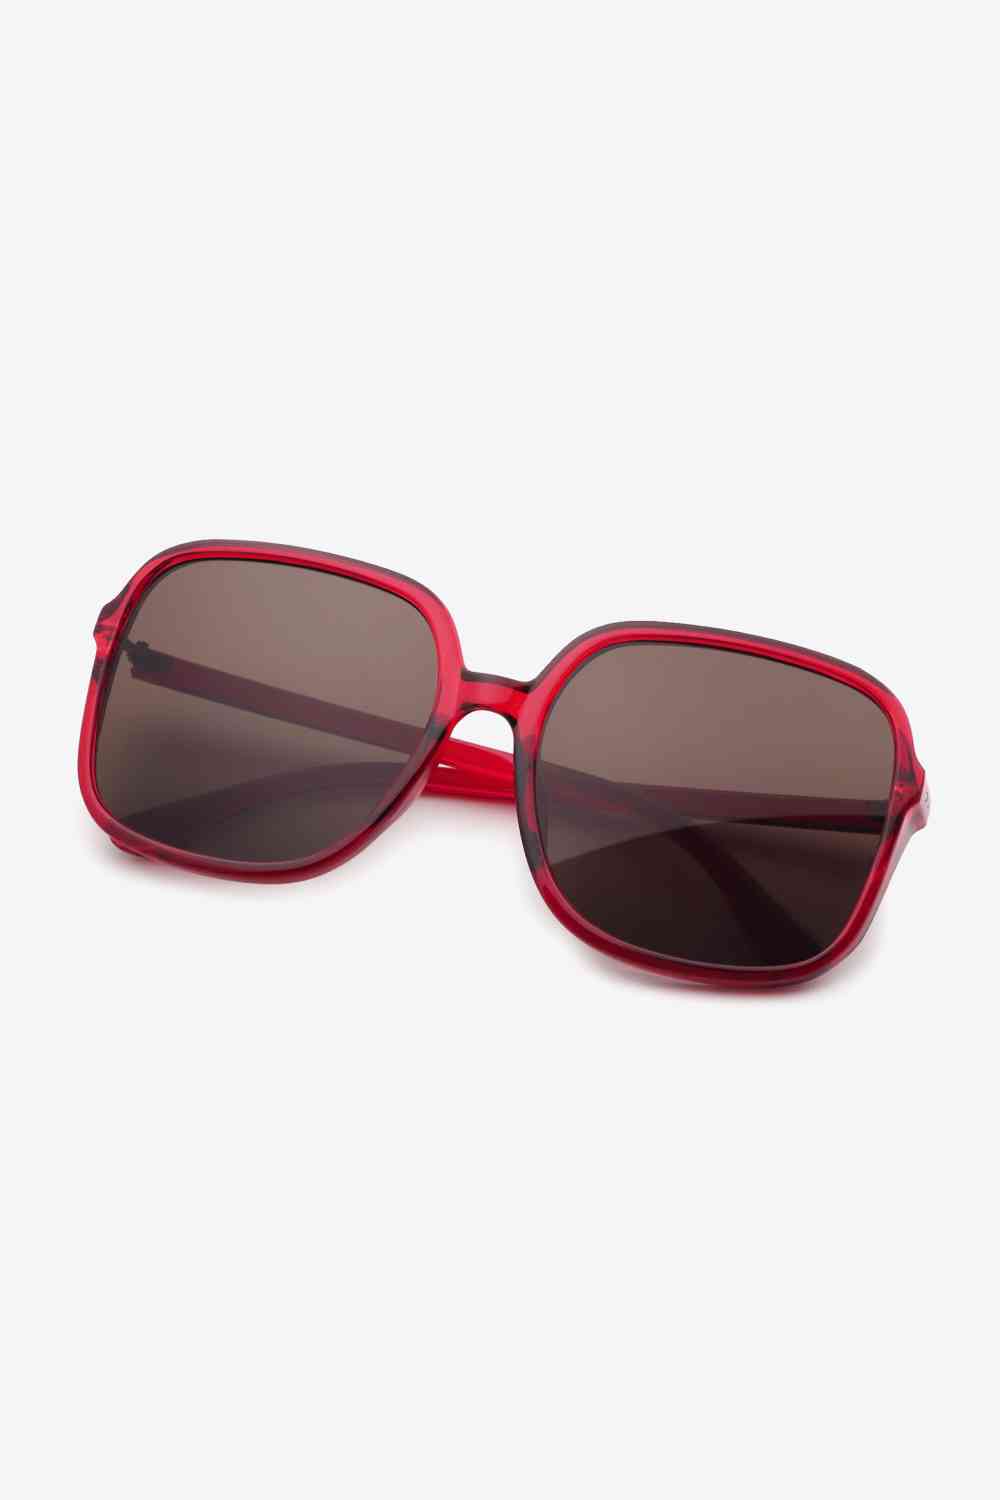 TEEK - Simply Square Style Sunglasses EYEGLASSES TEEK Trend Red  